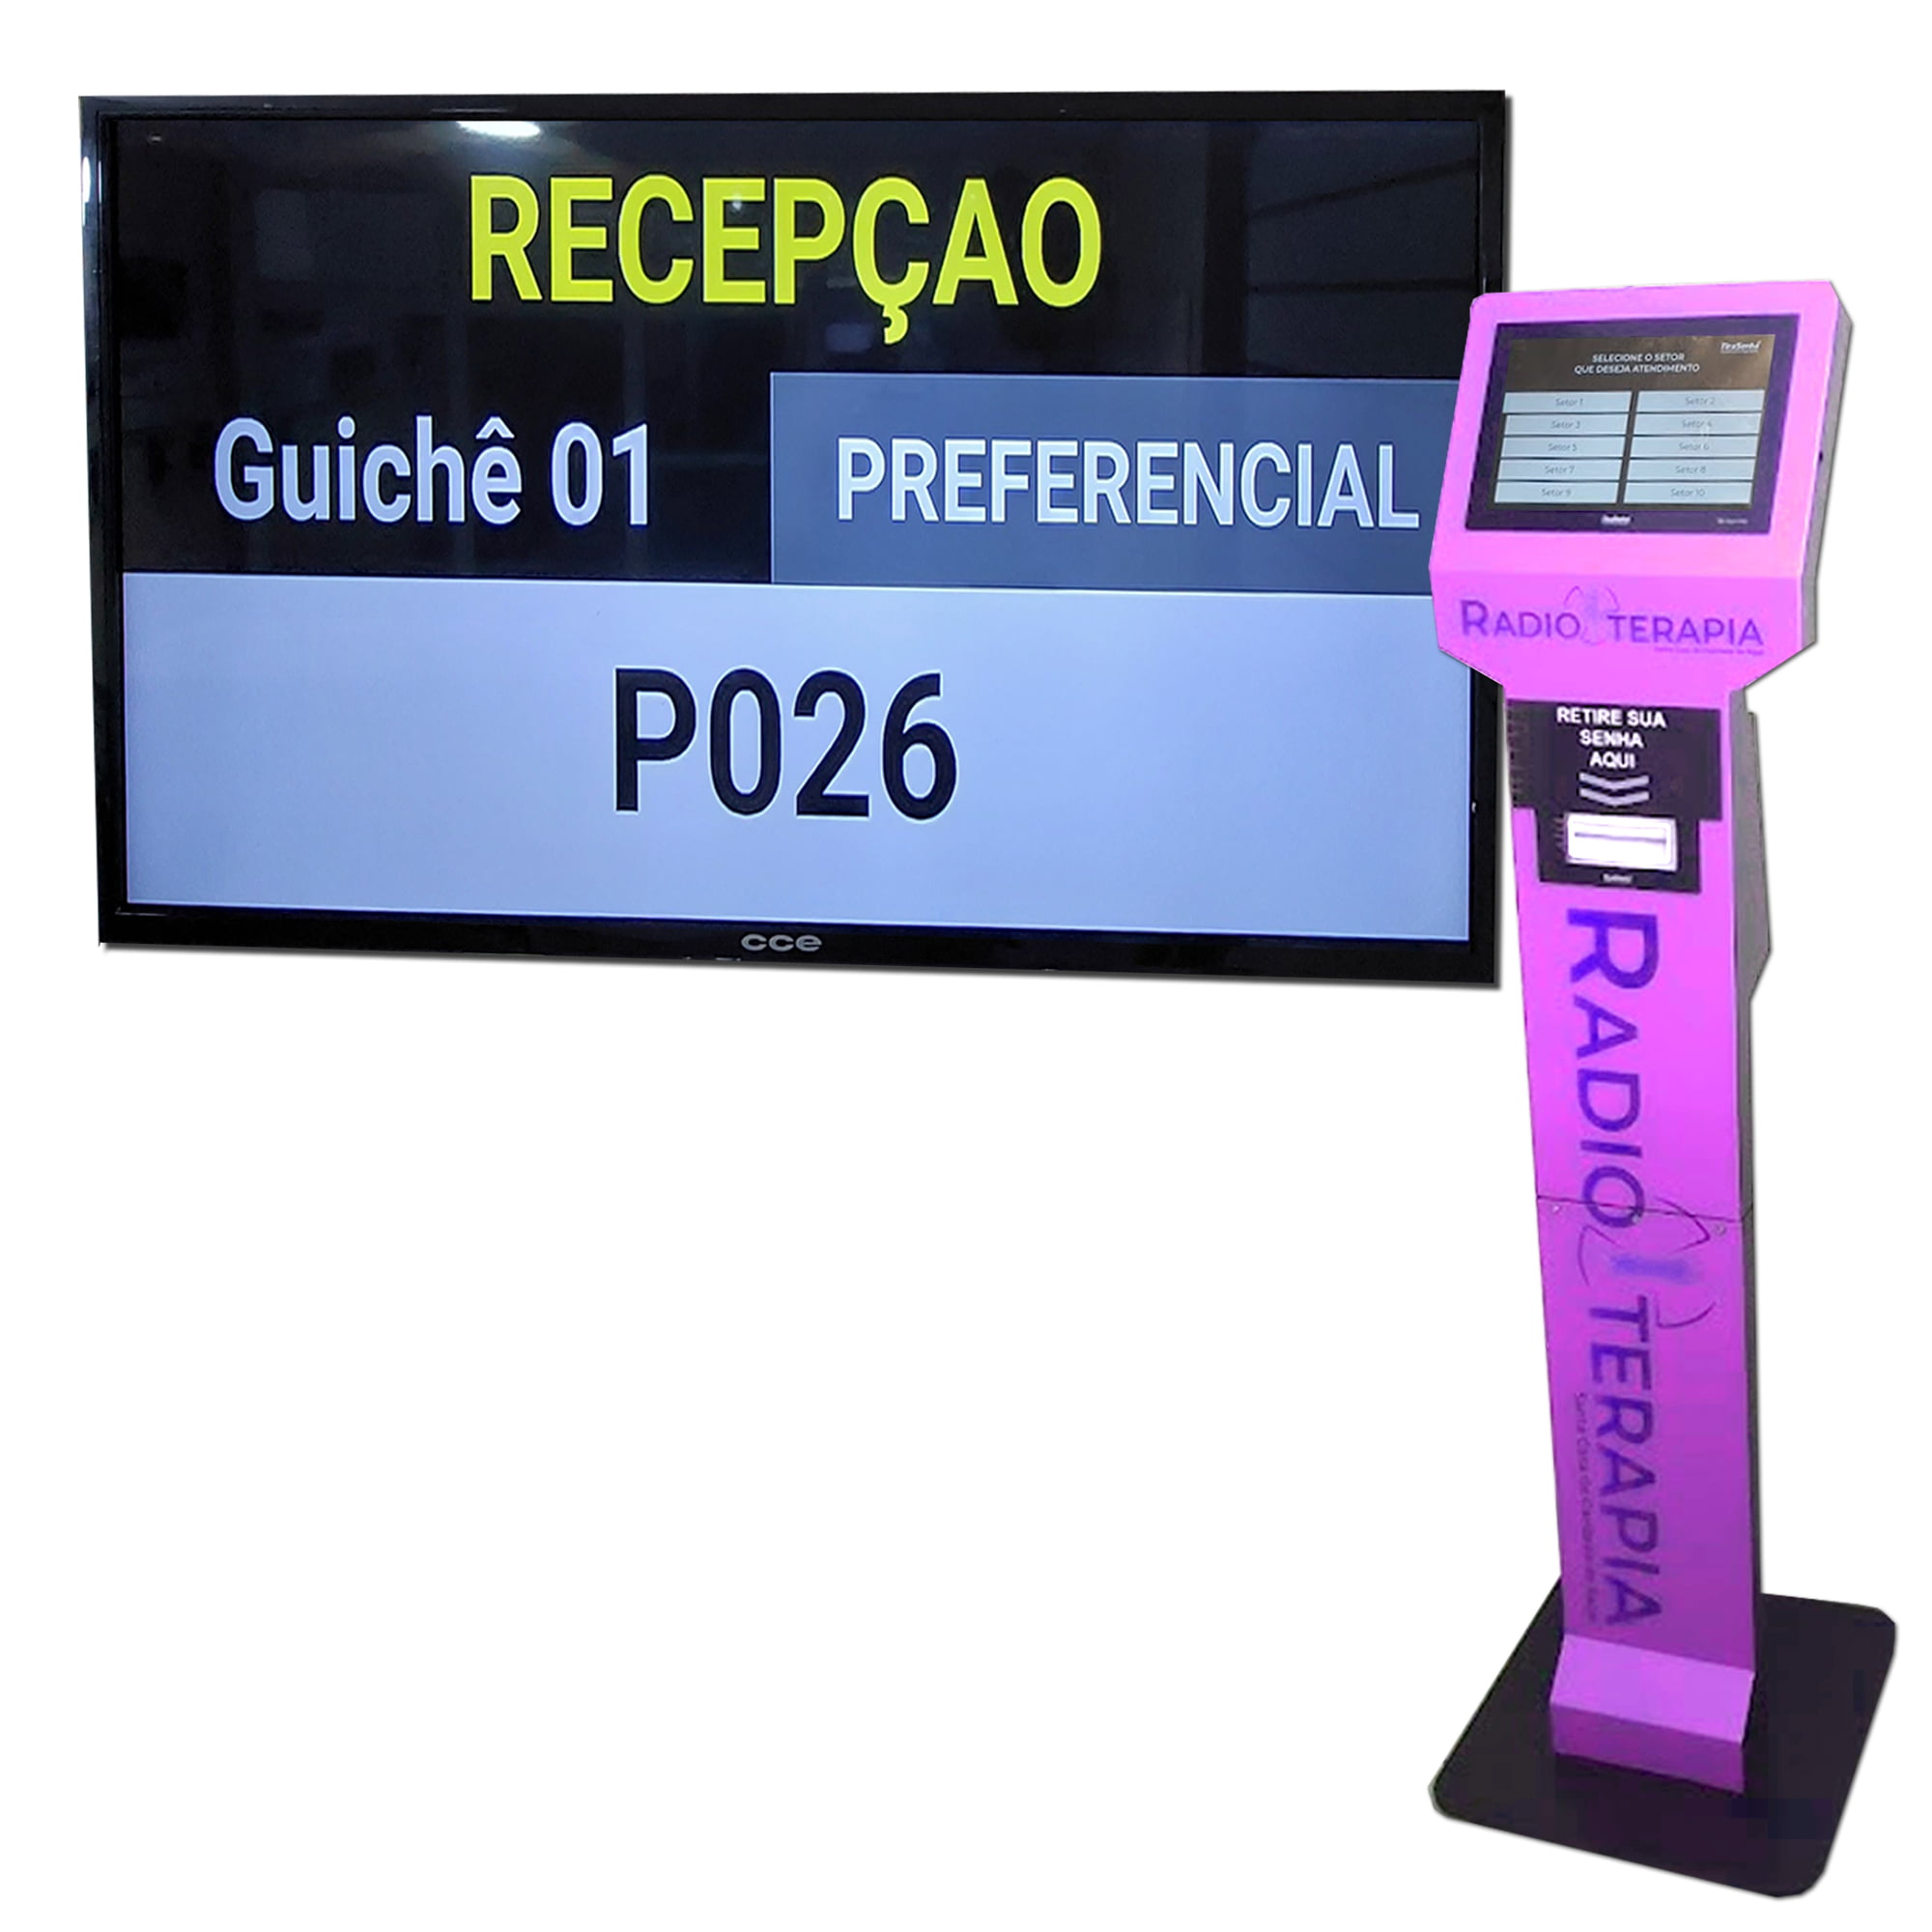 Terminal de Auto Atendimento Emissor de senhas Totem TS-Touch PRO c/ Visor 10" e Impressora Térmica de Senhas